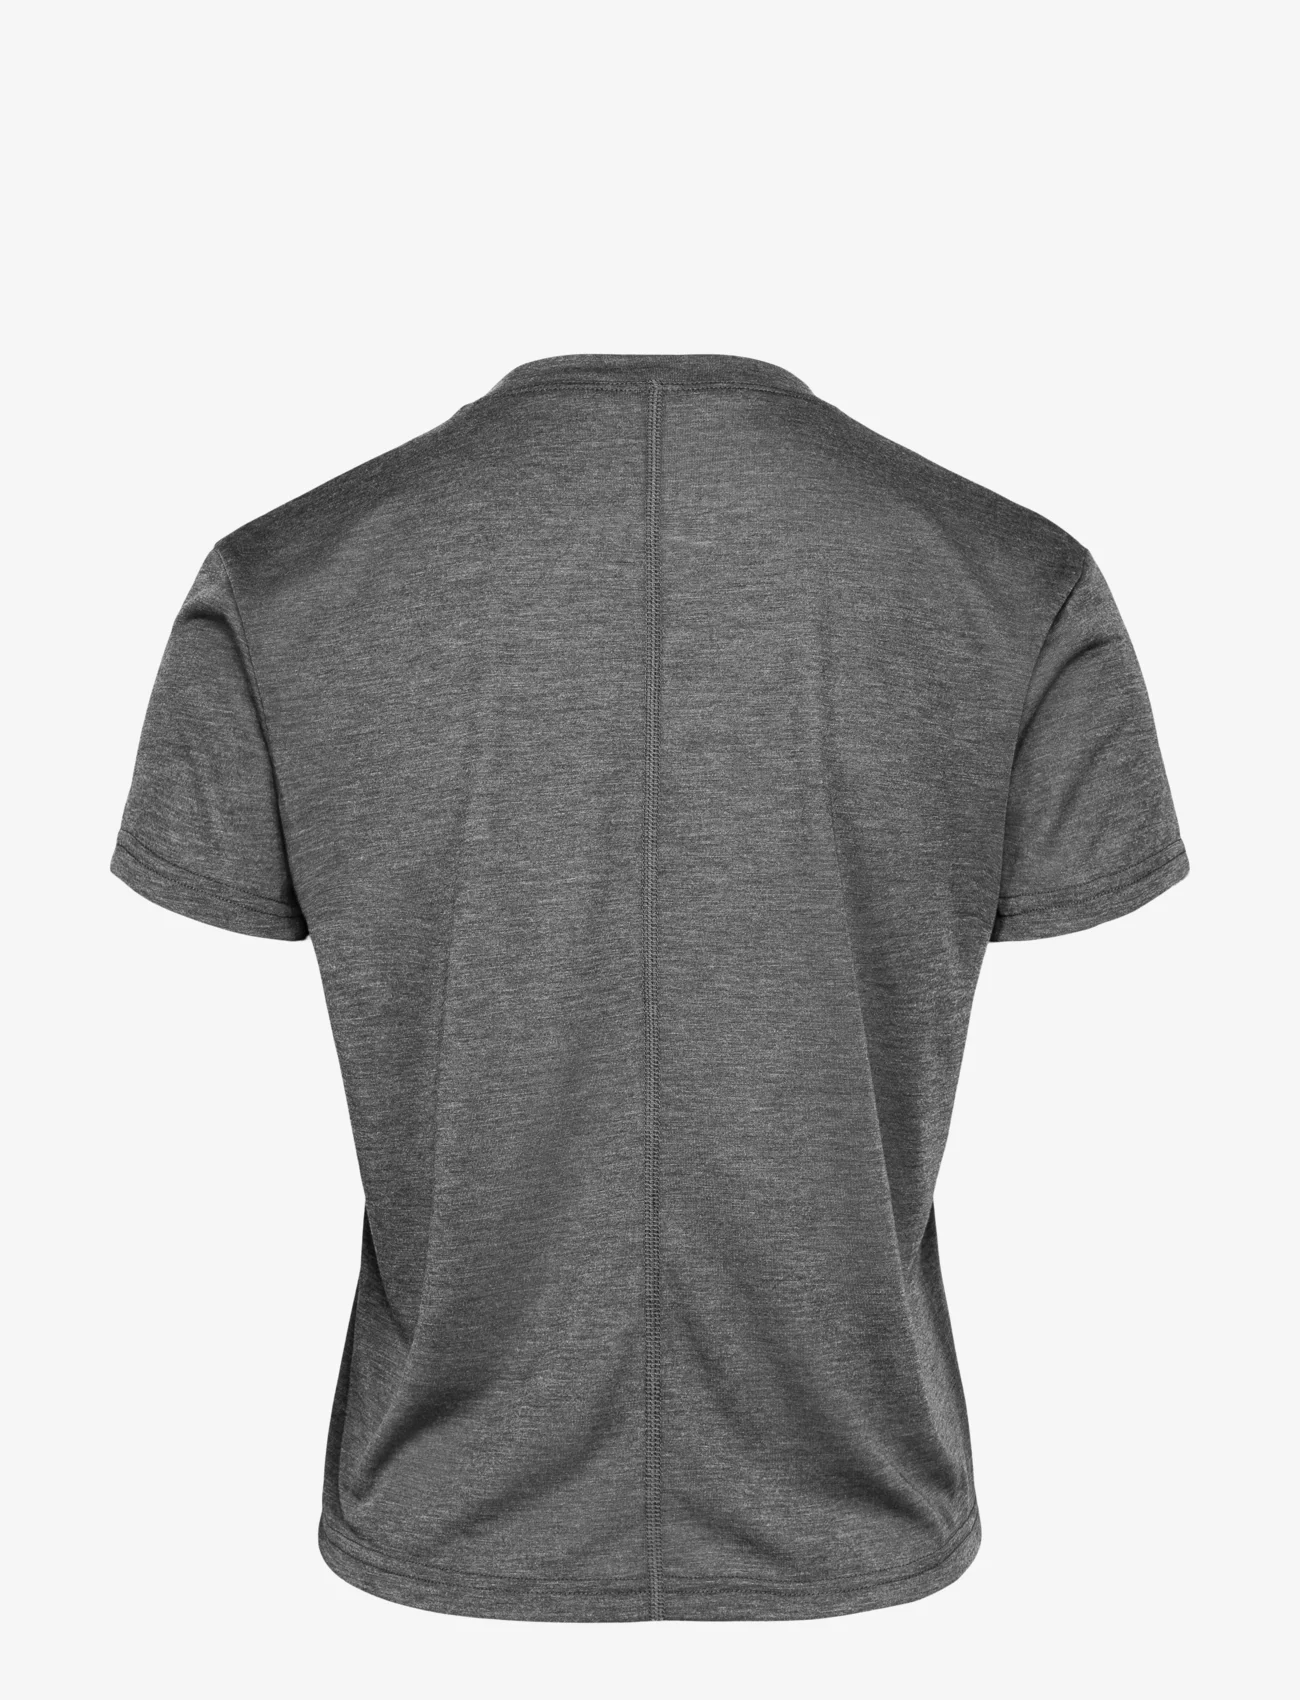 Johaug - Aerial Woolmix Tee 2.0 - t-shirts - black - 1